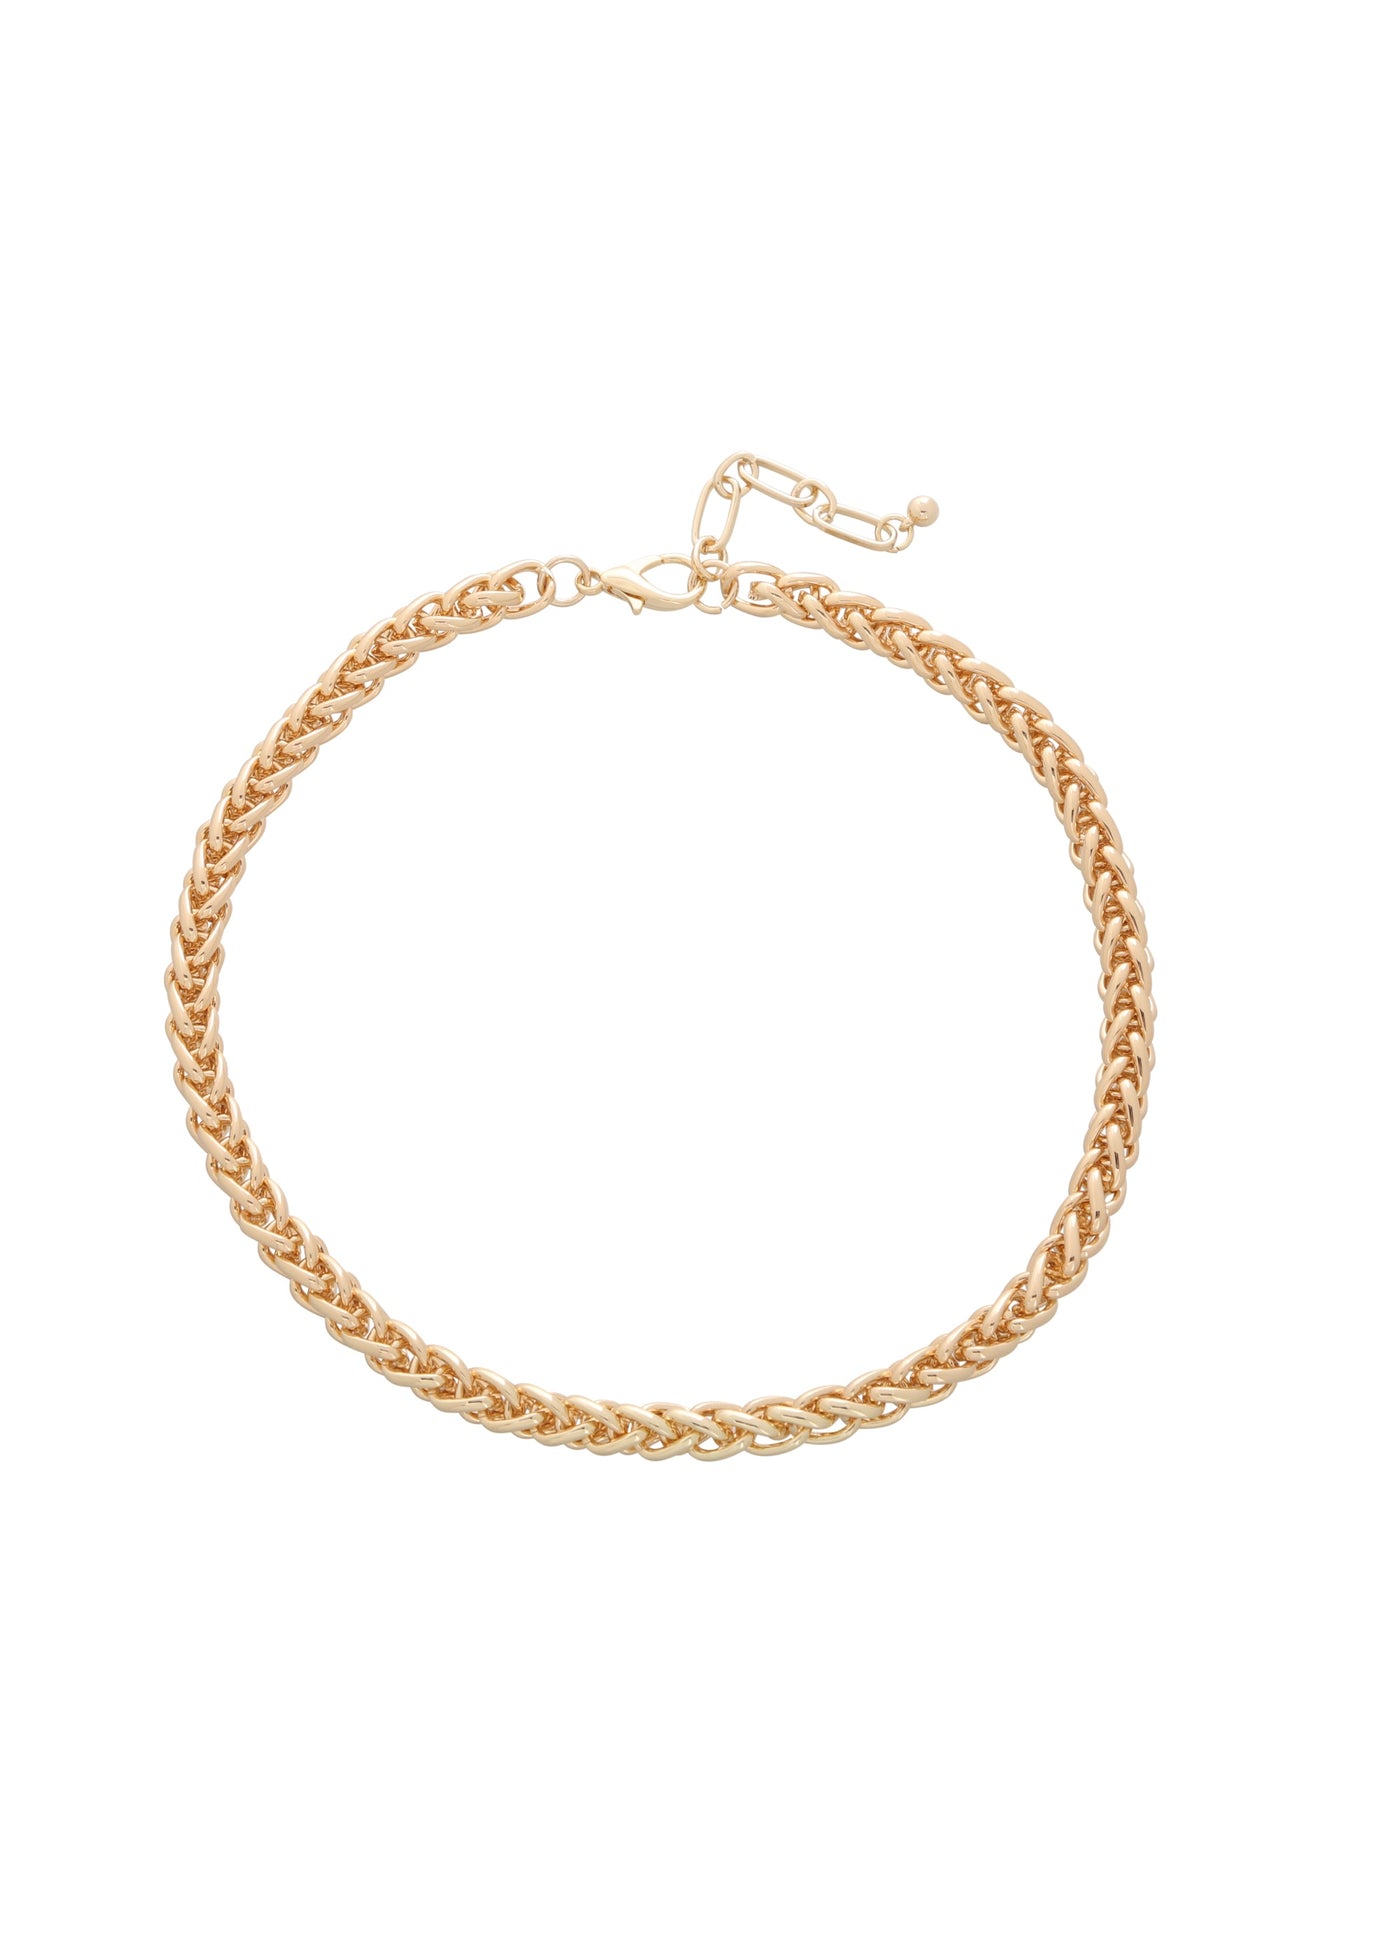 Merx - Braided Gold Chain